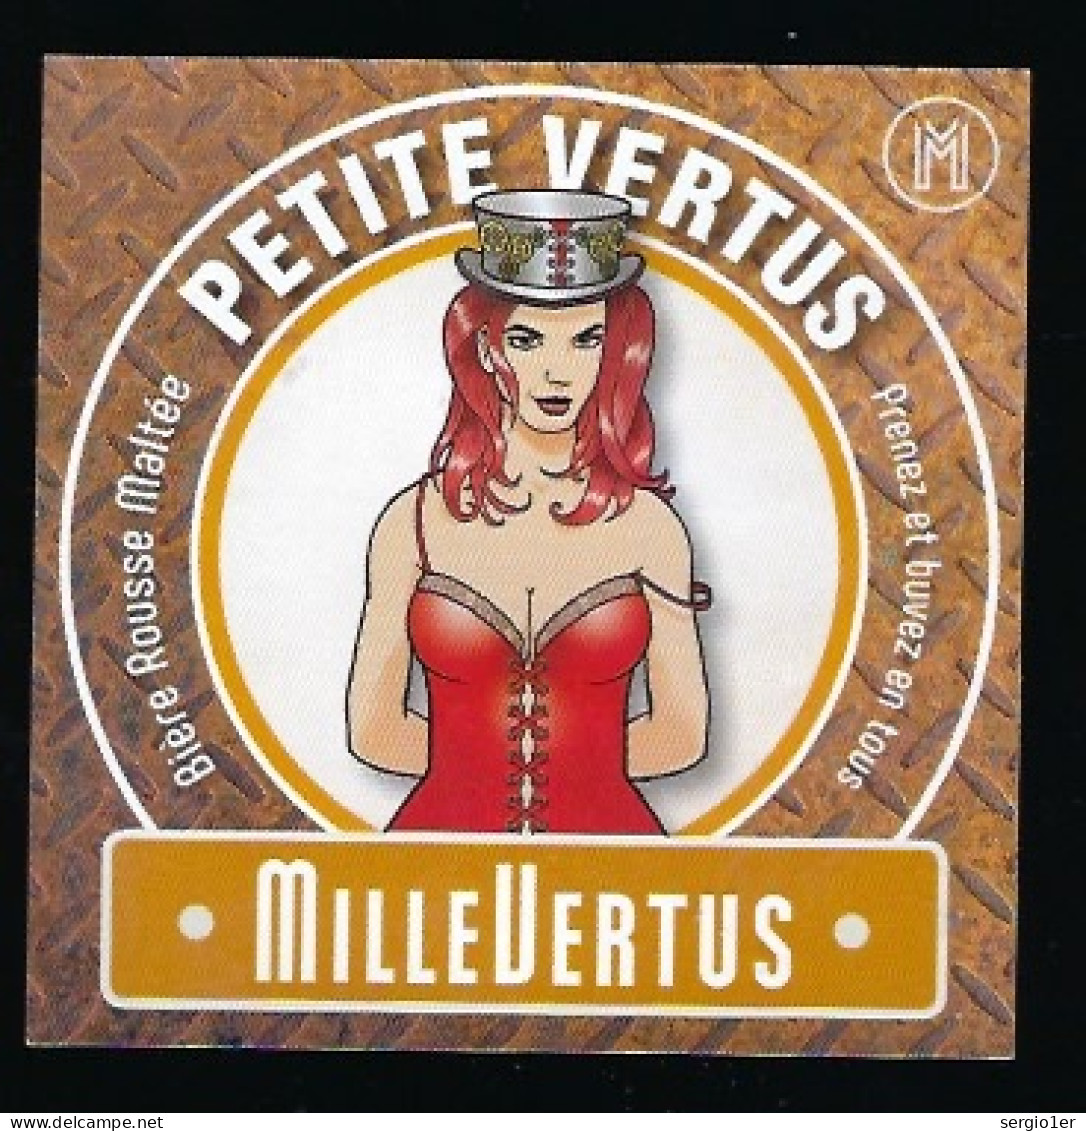 étiquette Bière Belge: Biere Rousse Maltée  Petite Vertus 4,7°% Brasserie Millevertus à Tintigny " Femme" - Bier